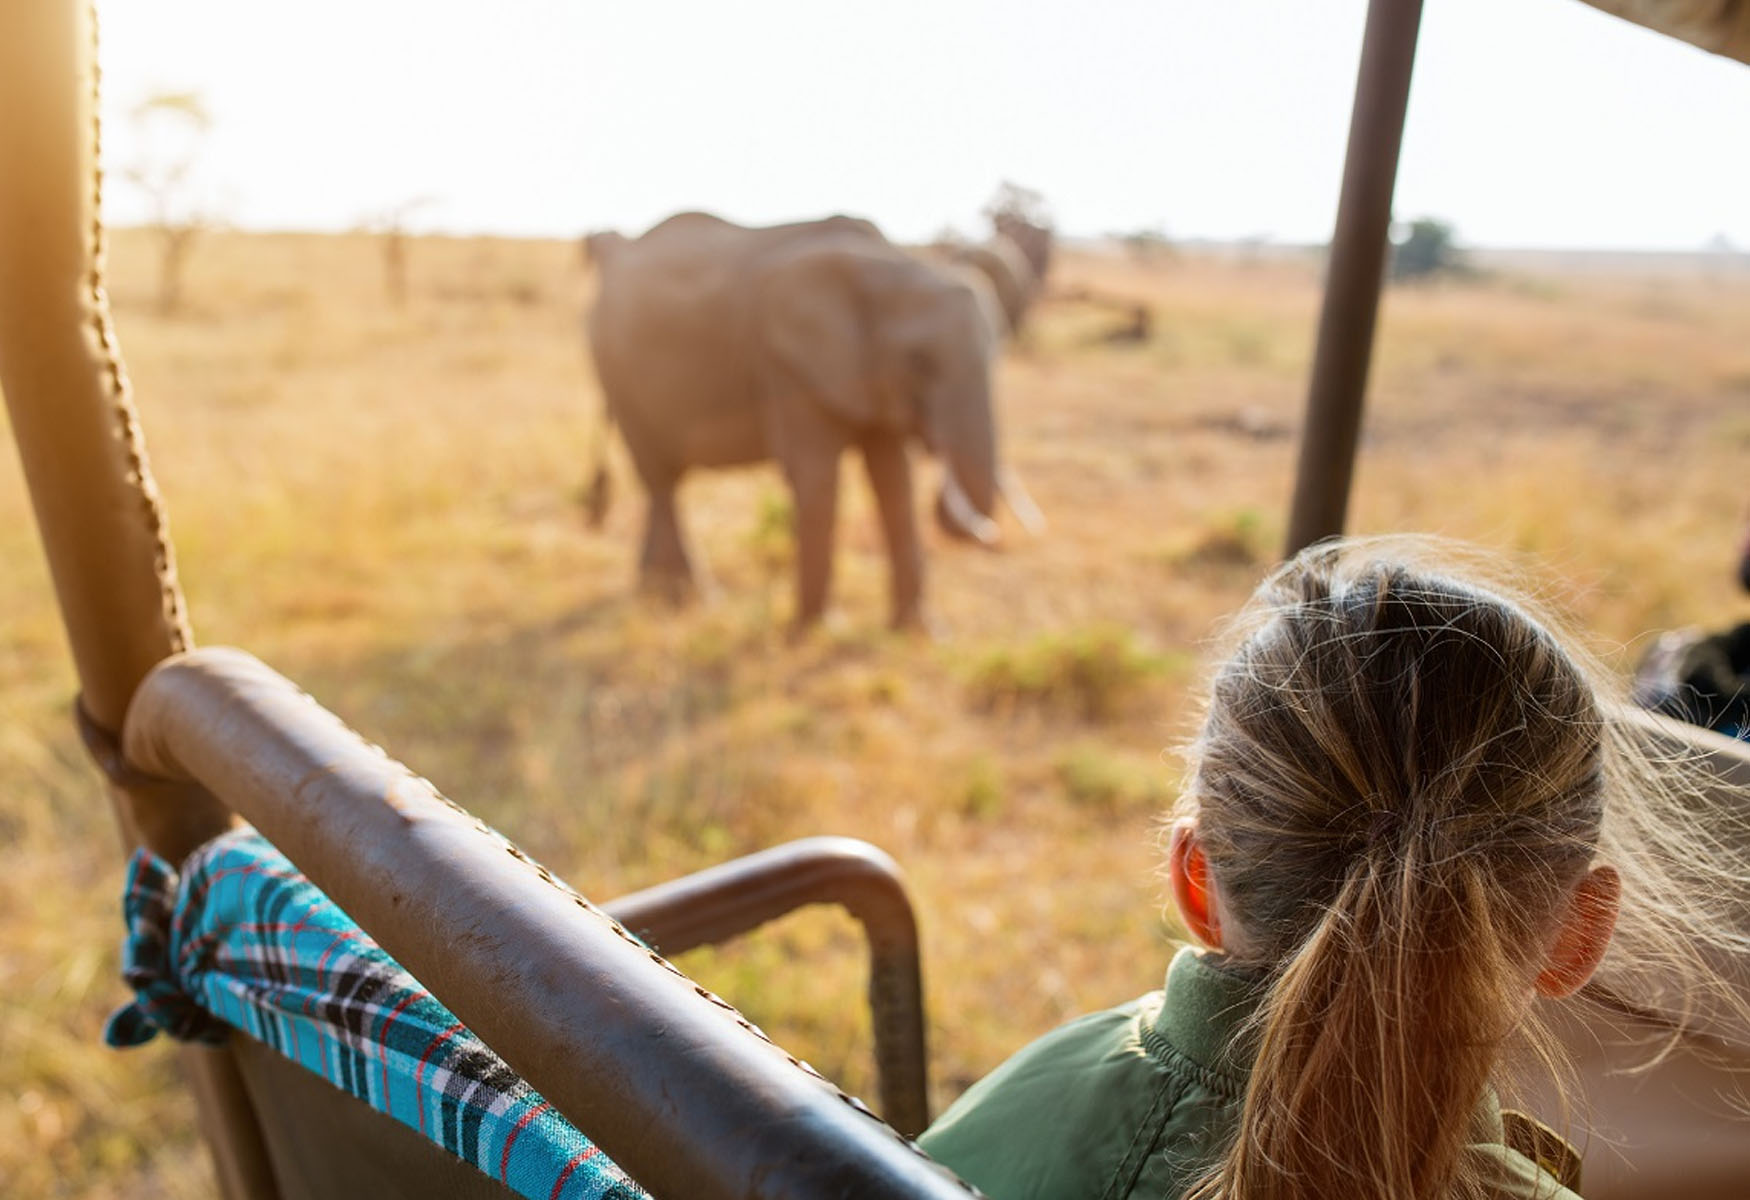 Ethical Animal Tourism: Is Wildlife Tourism OK?